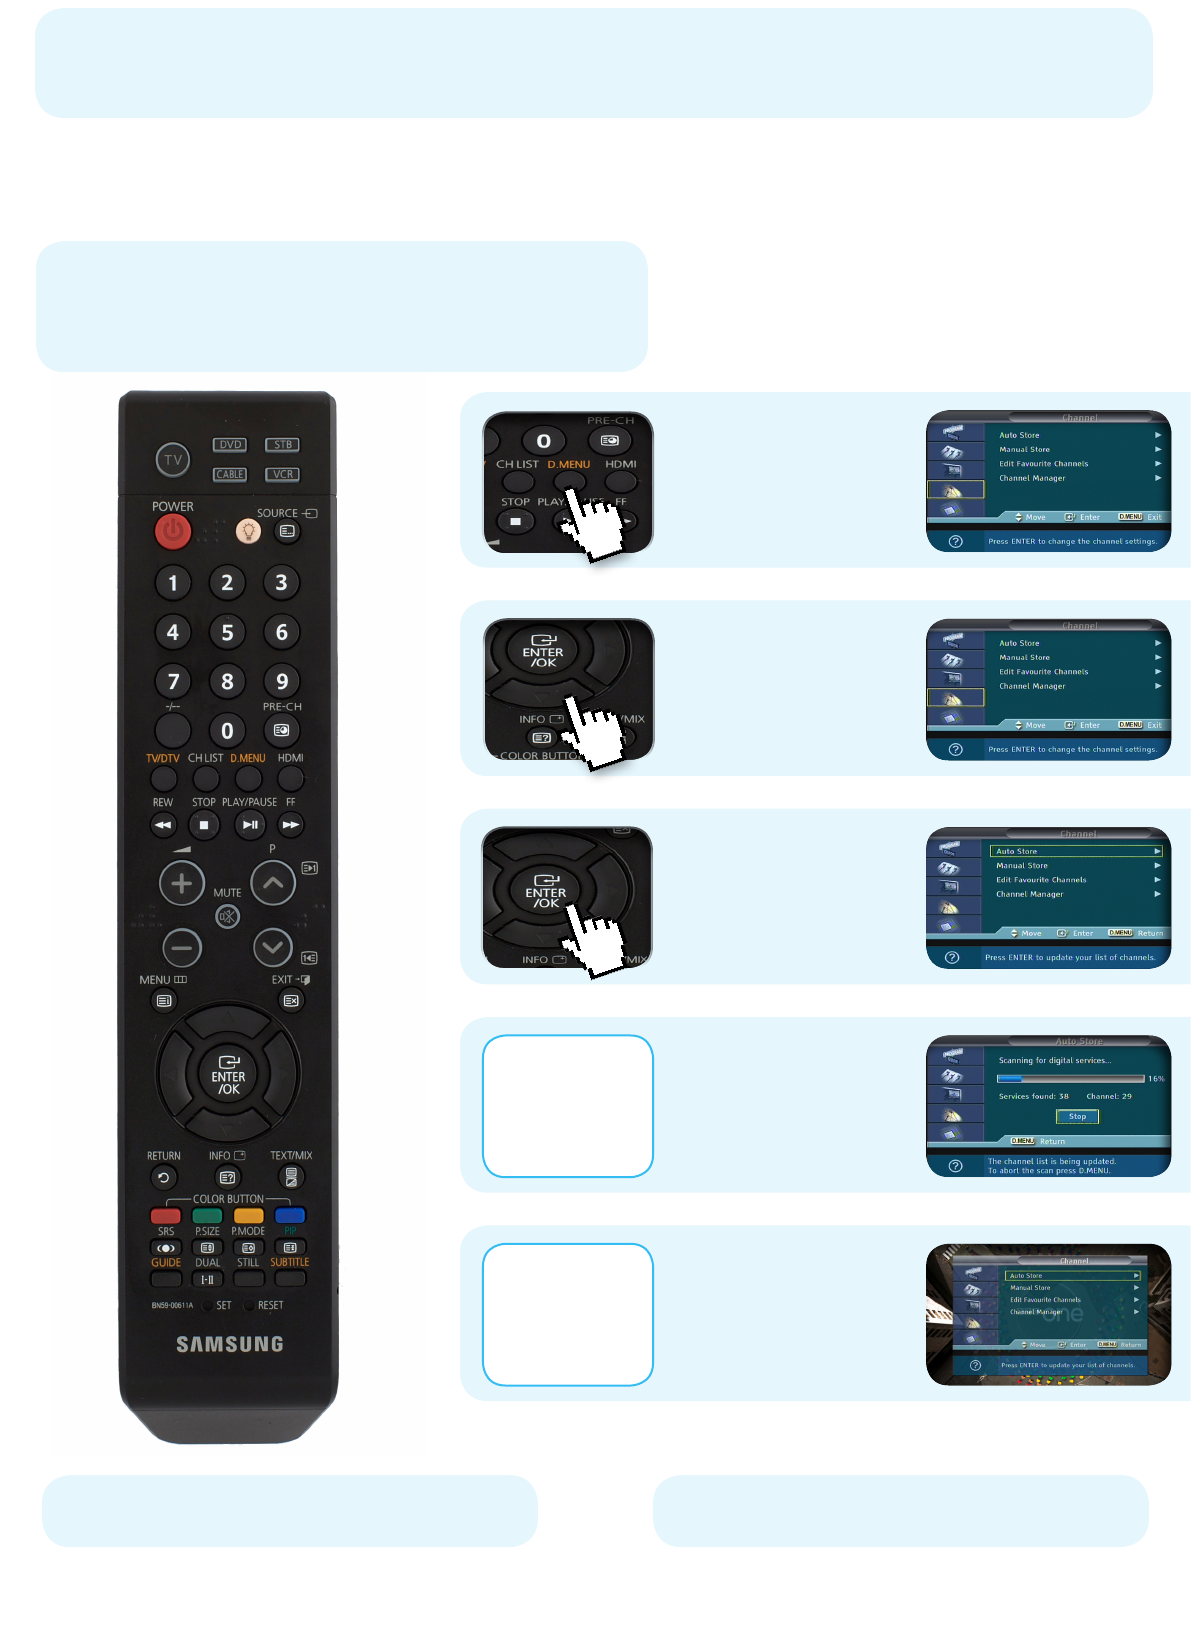 Samsung remote control manual